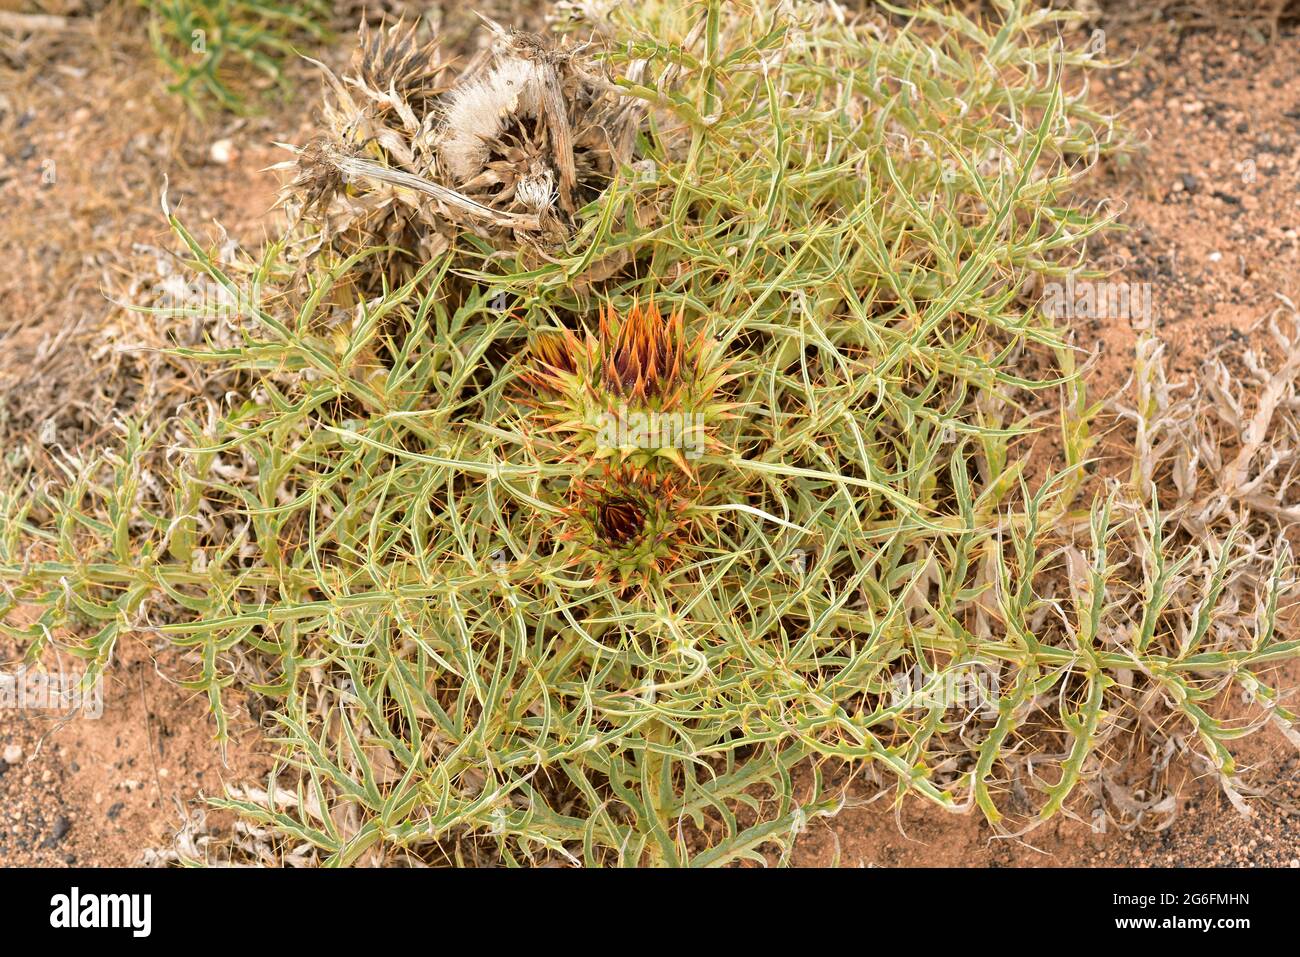 Wildcardoon (Cynaro cardunculus) ist eine krautige Staudenpflanze. Dieses Foto wurde auf Lanzarote, Kanarische Inseln, Spanien aufgenommen. Stockfoto